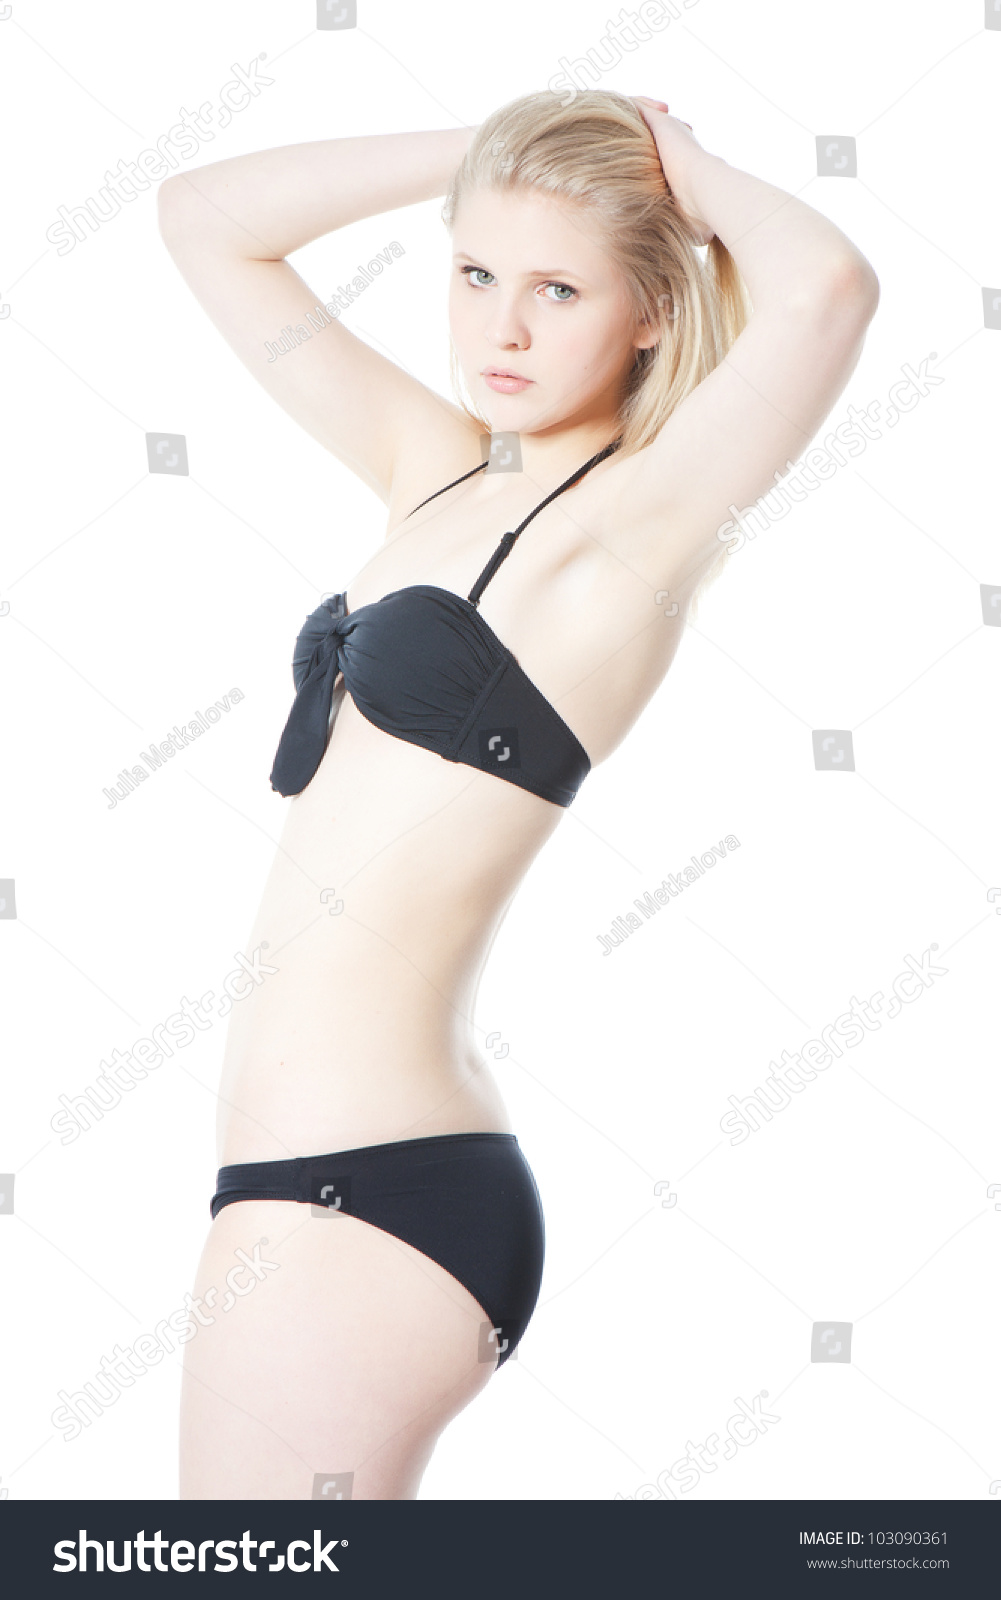 young teen girl bikini